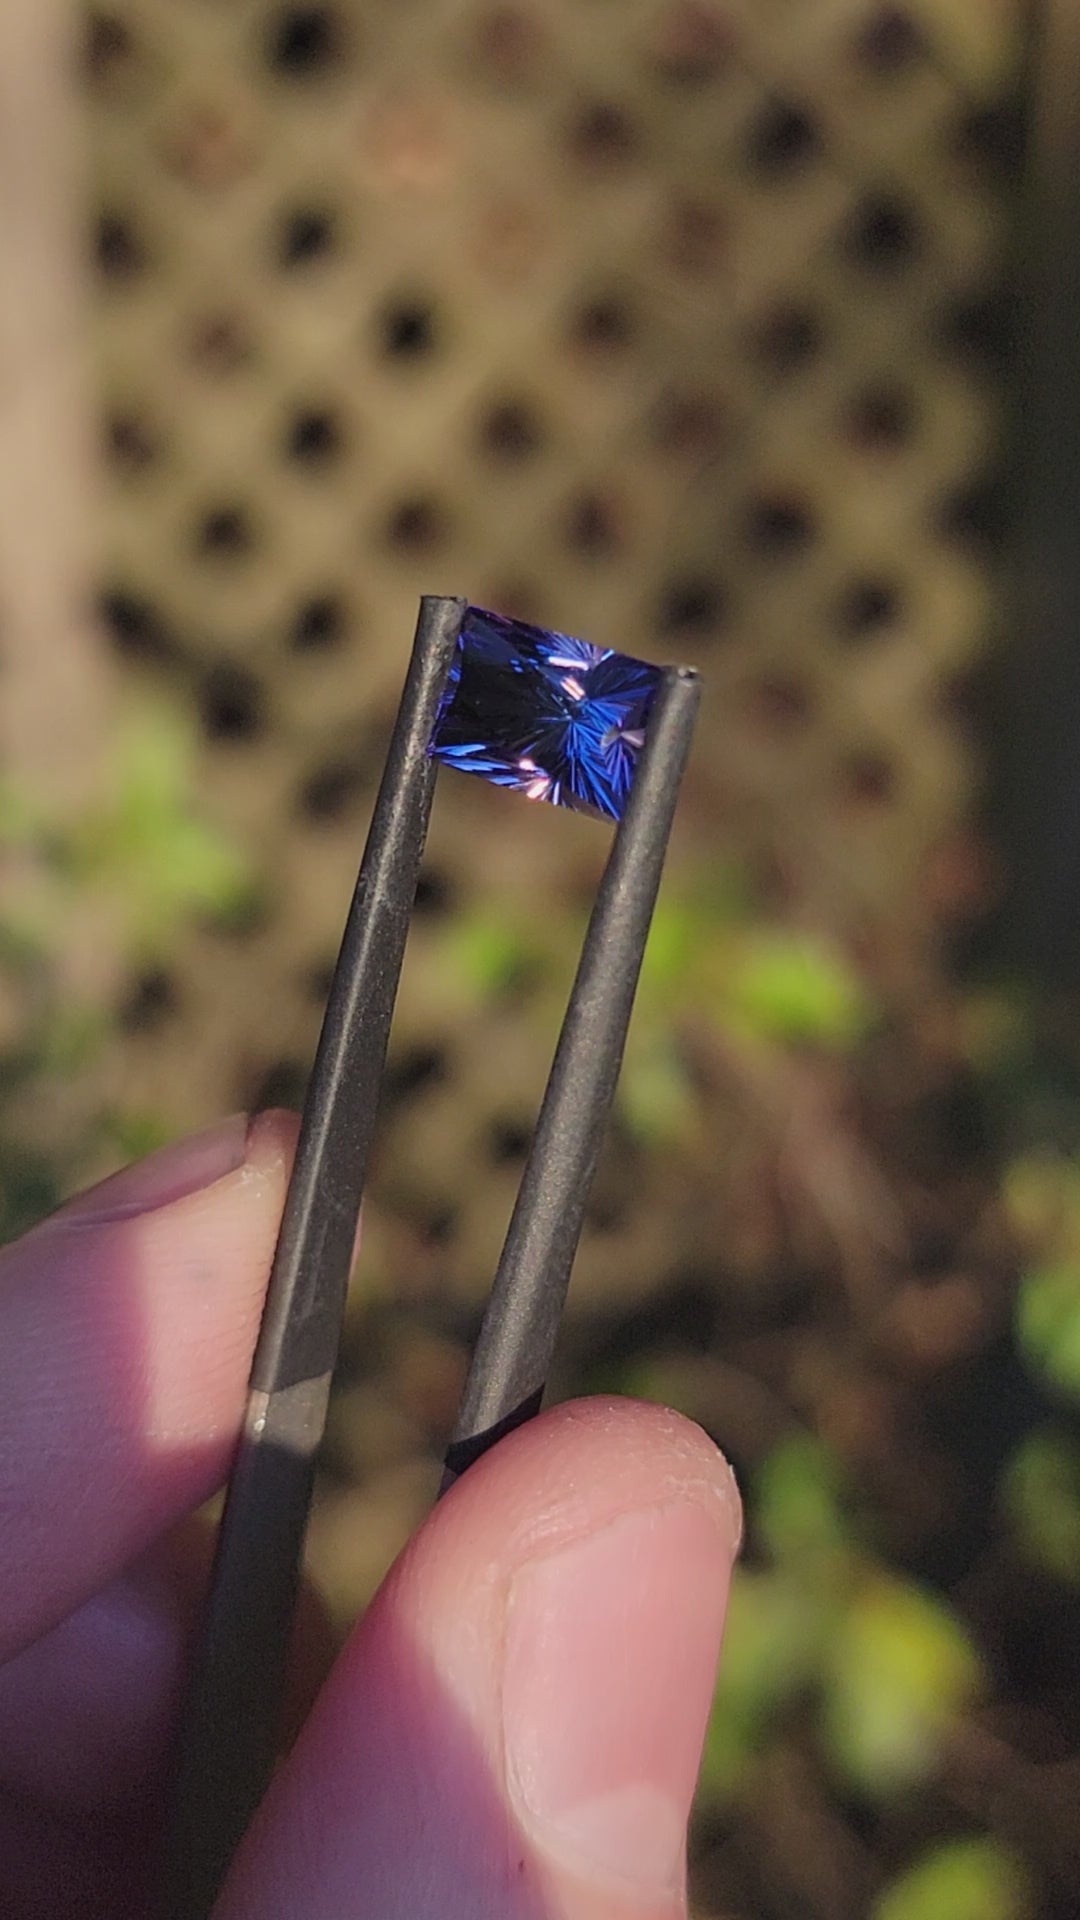 3.4 Carat Unheated Blue/Purple Tanzanite Princess Cut - 9.7x6.3mmmm - Fantasy Cut